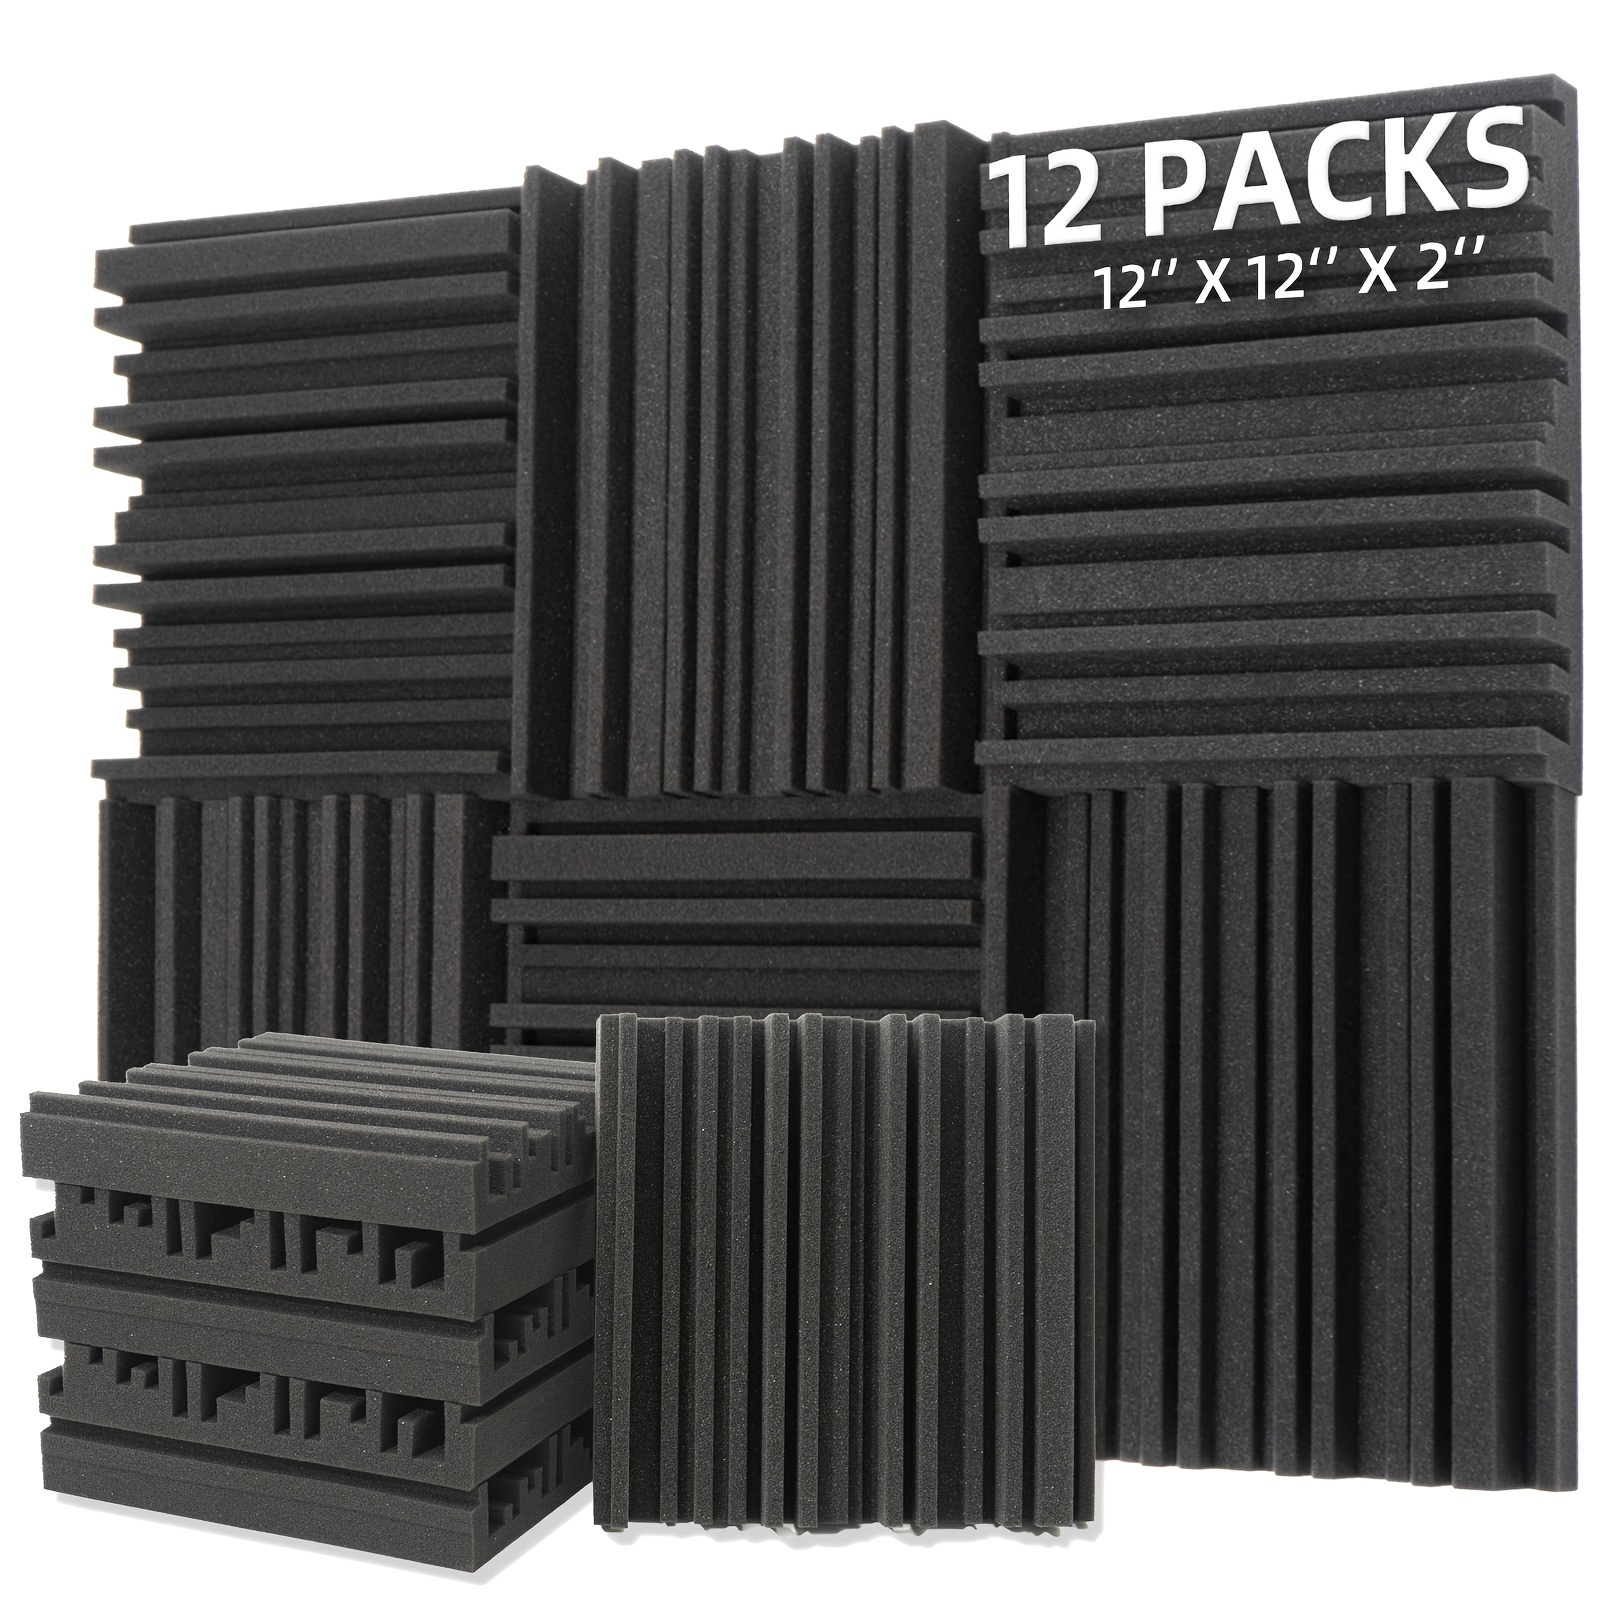 12 Pack mousse acoustique, panneaux anti-adhésifs insonorisants, pour l'isolation  acoustique et le traitement acoustique (bla